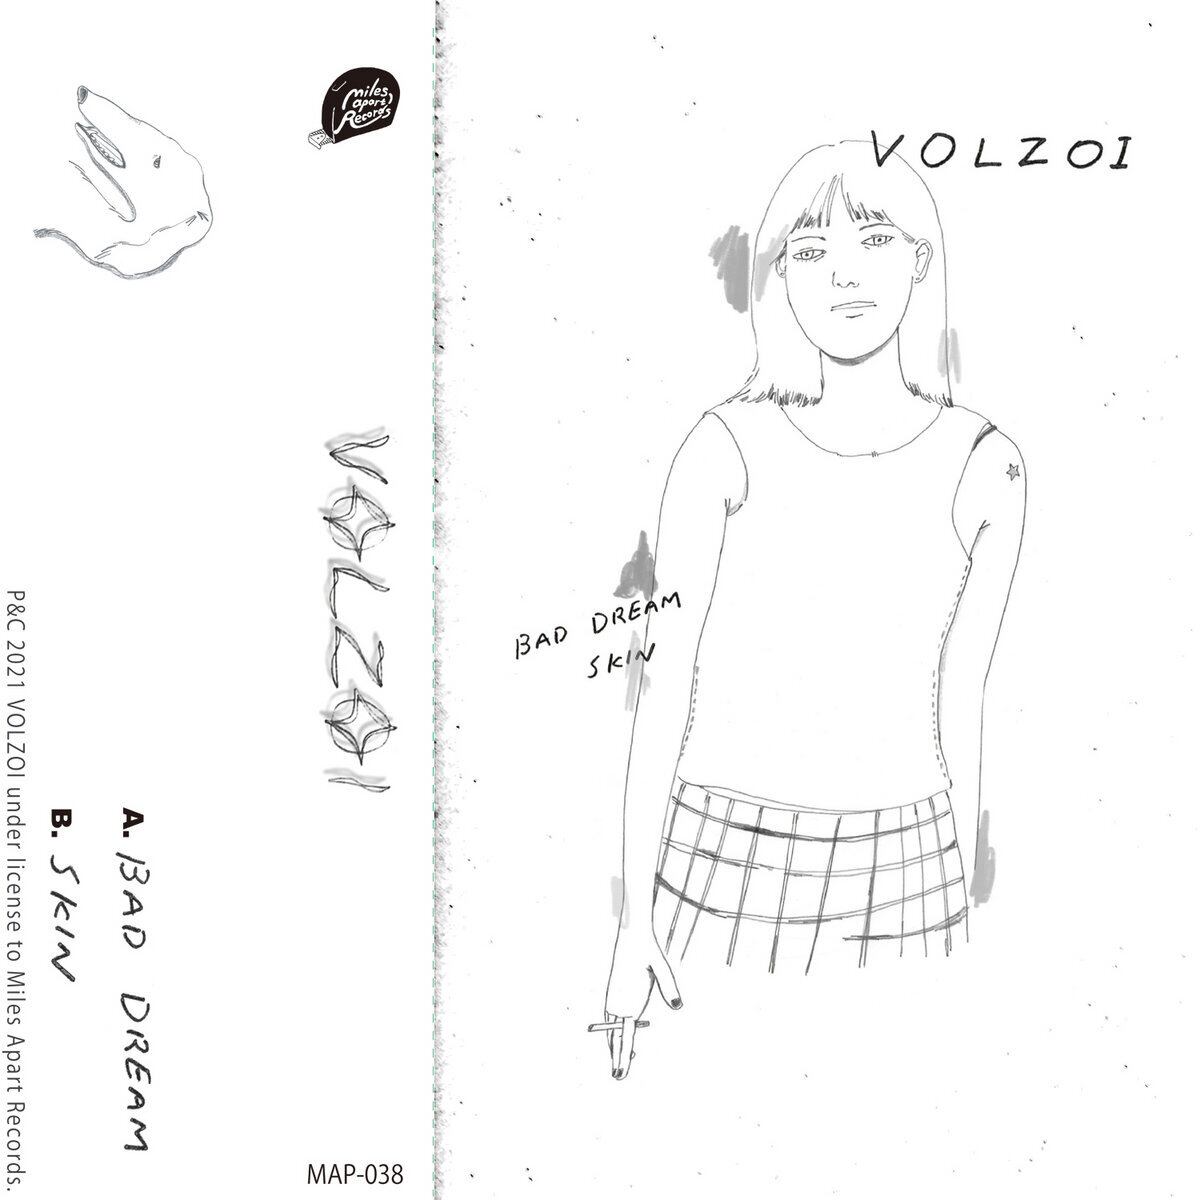 VOLZOI / Bad Dream / Skin（150 Ltd Cassette）